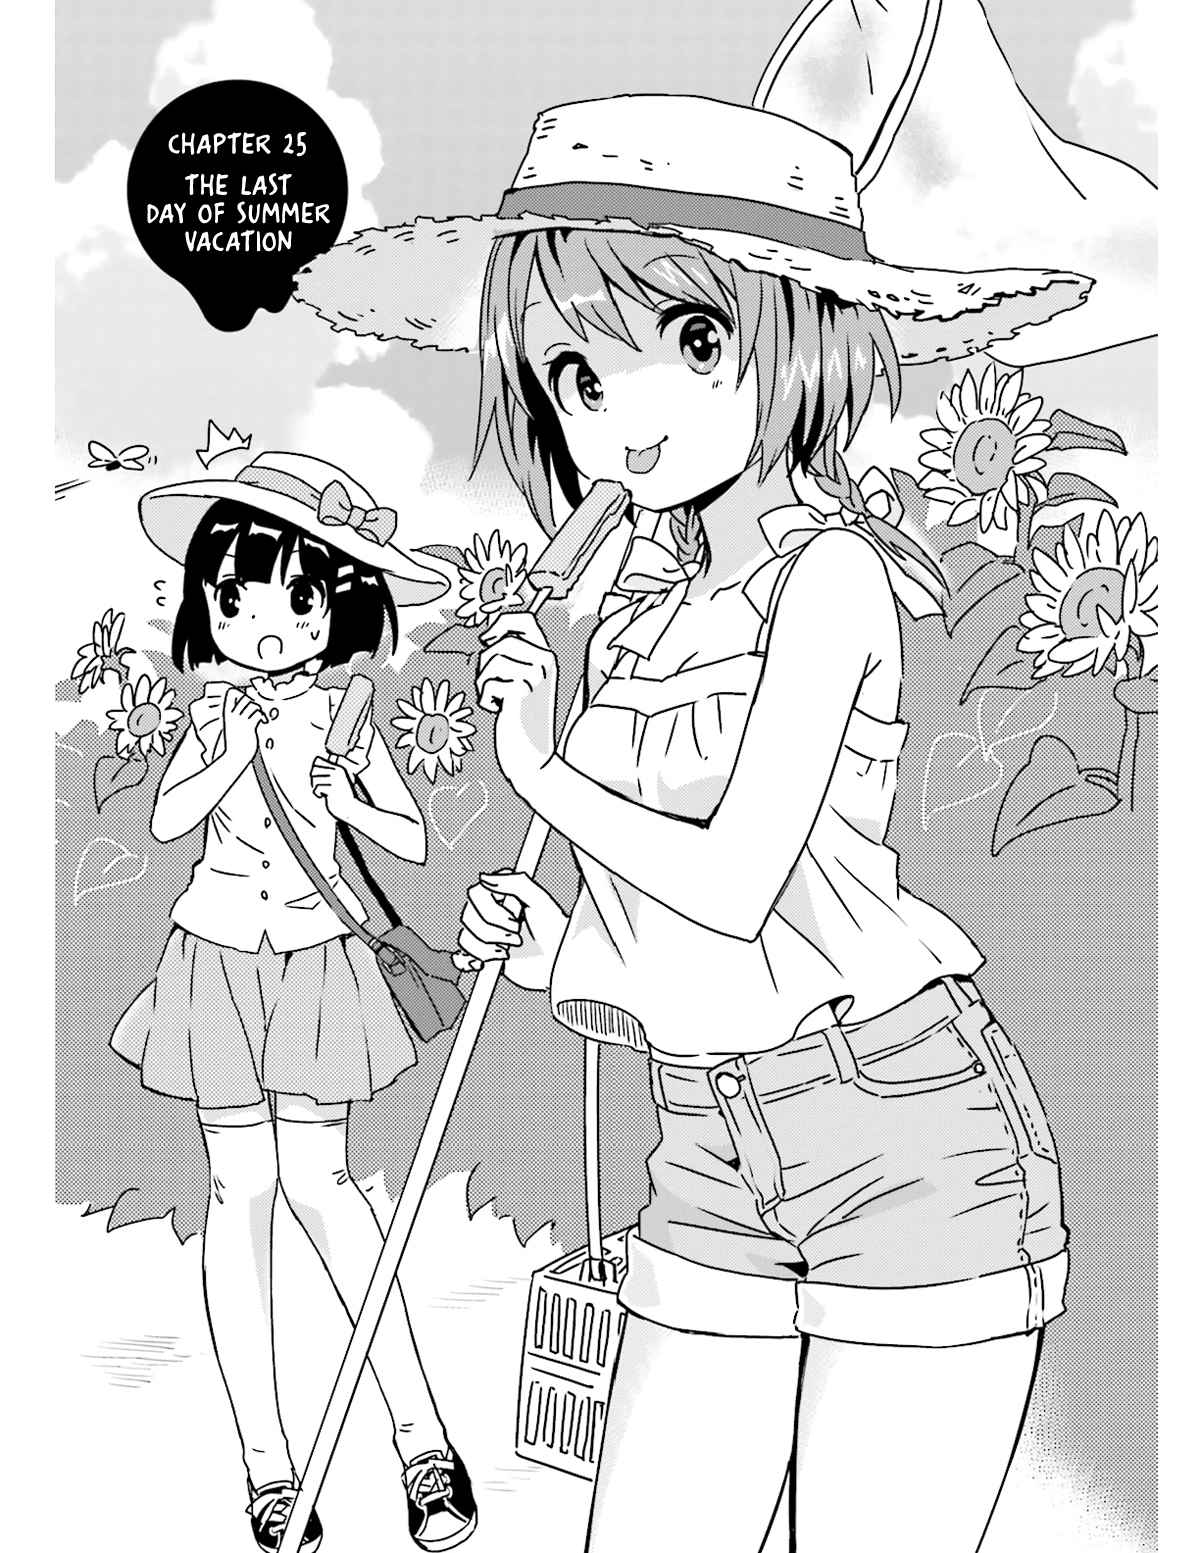 Tonari no Kyuuketsuki san Vol. 3 Ch. 25 The Last Day of Summer Vacation